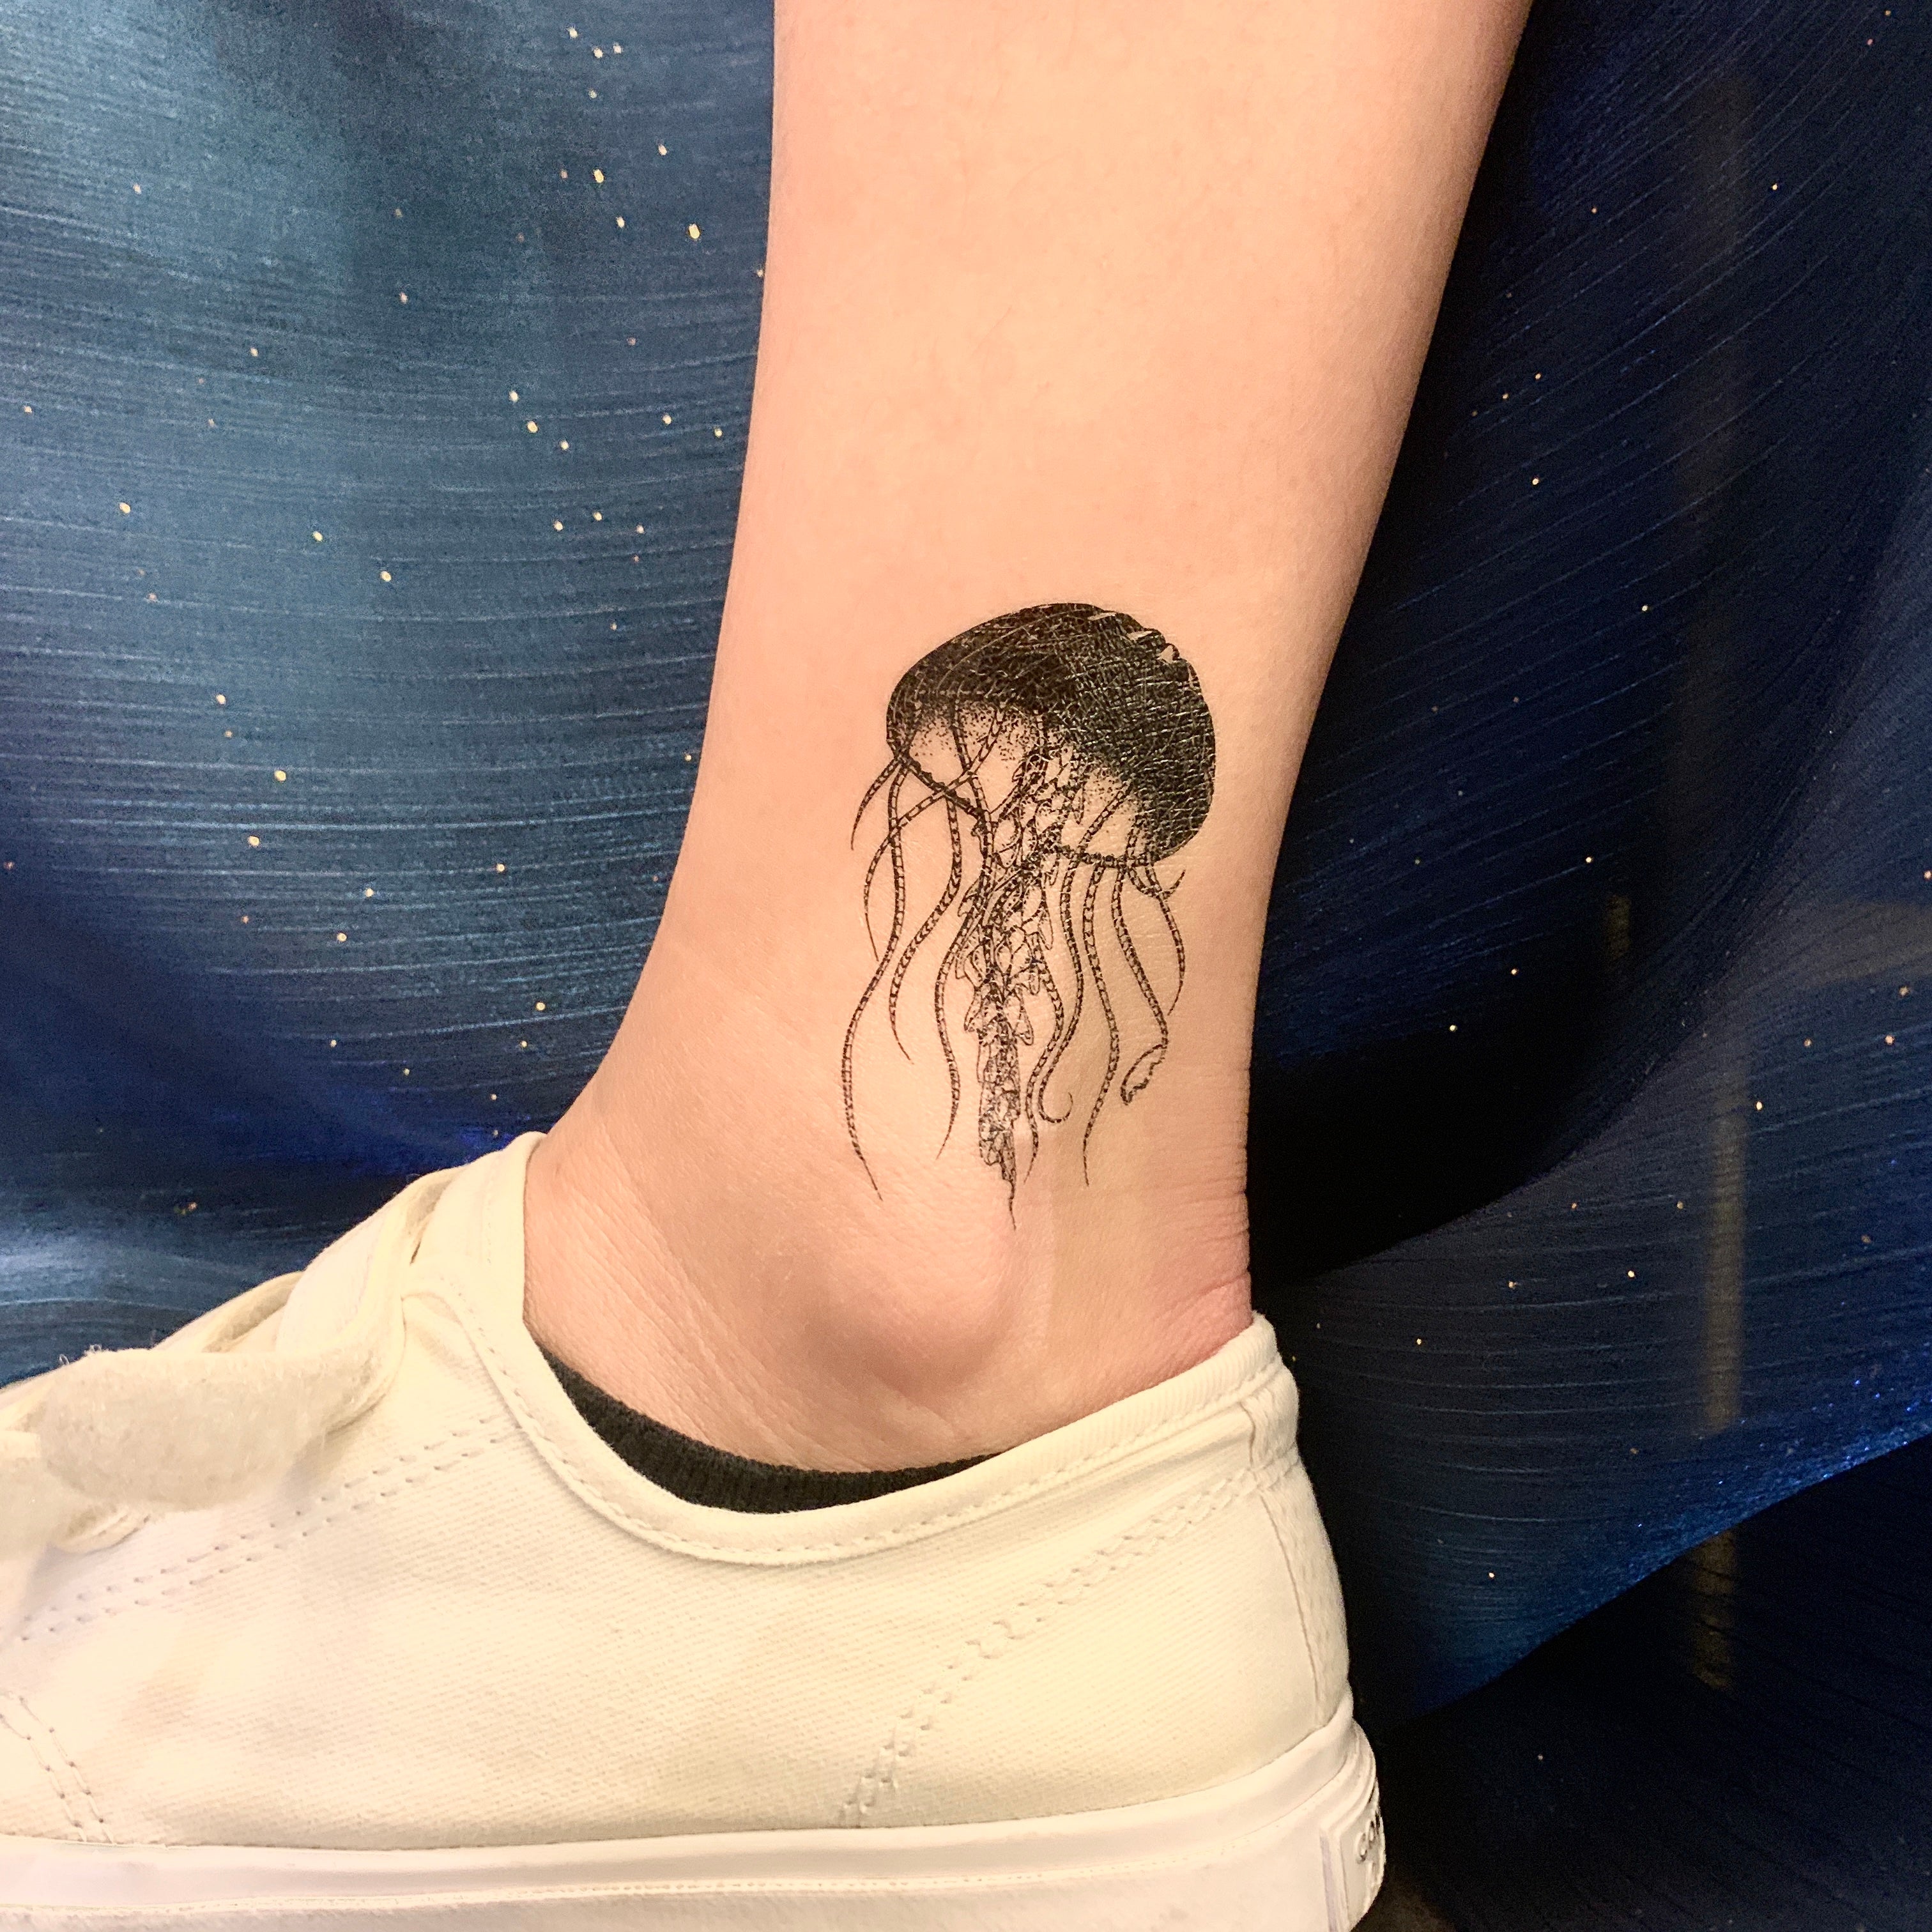 Jellyfish tattoo design by CunniffeCharlie on DeviantArt